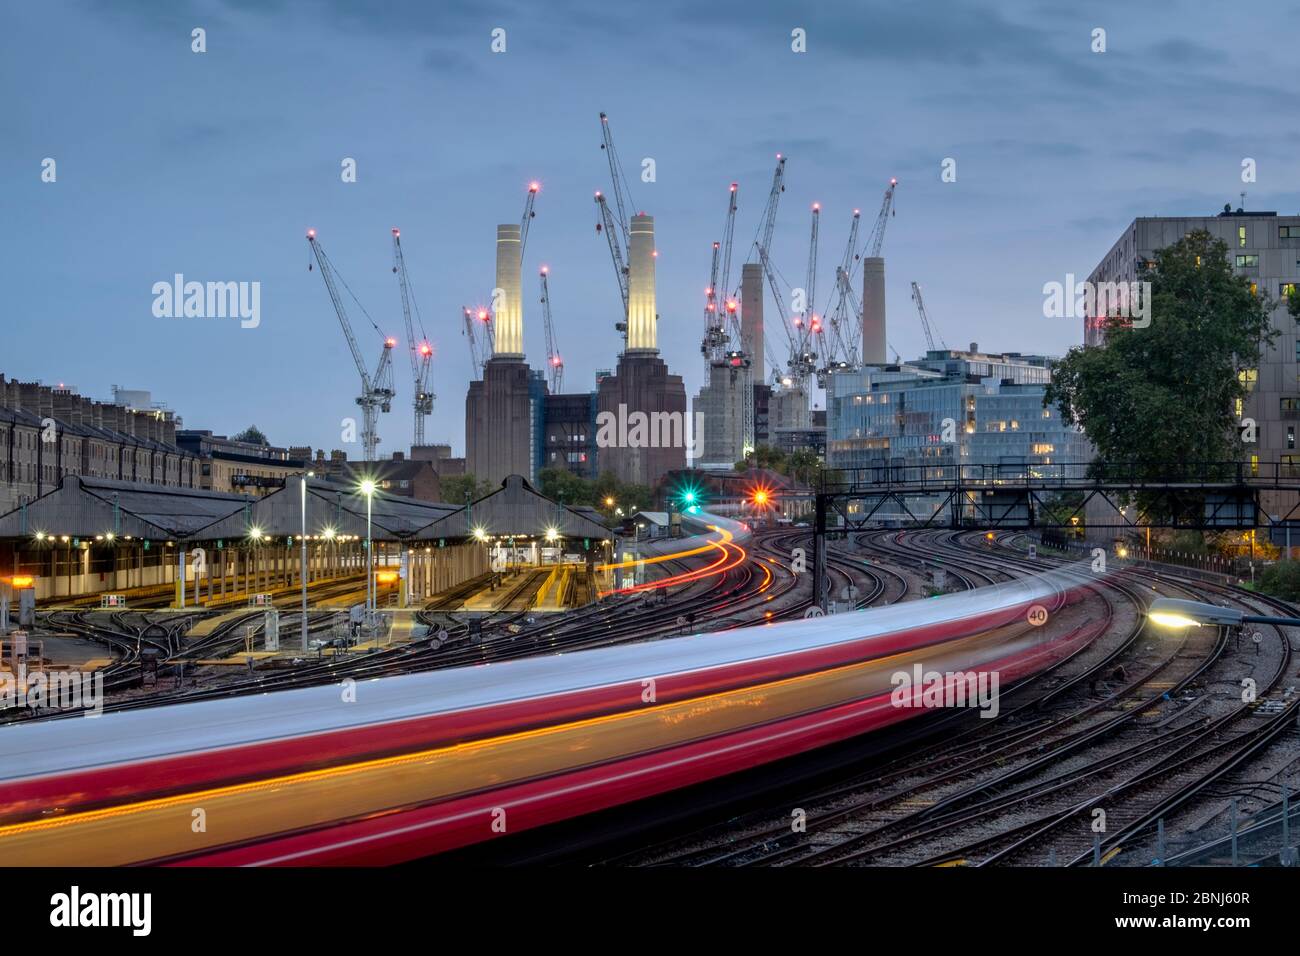 Longue exposition de train de voyageurs se rendant à la station électrique de Battersea, Londres, Angleterre, Royaume-Uni, Europe Banque D'Images